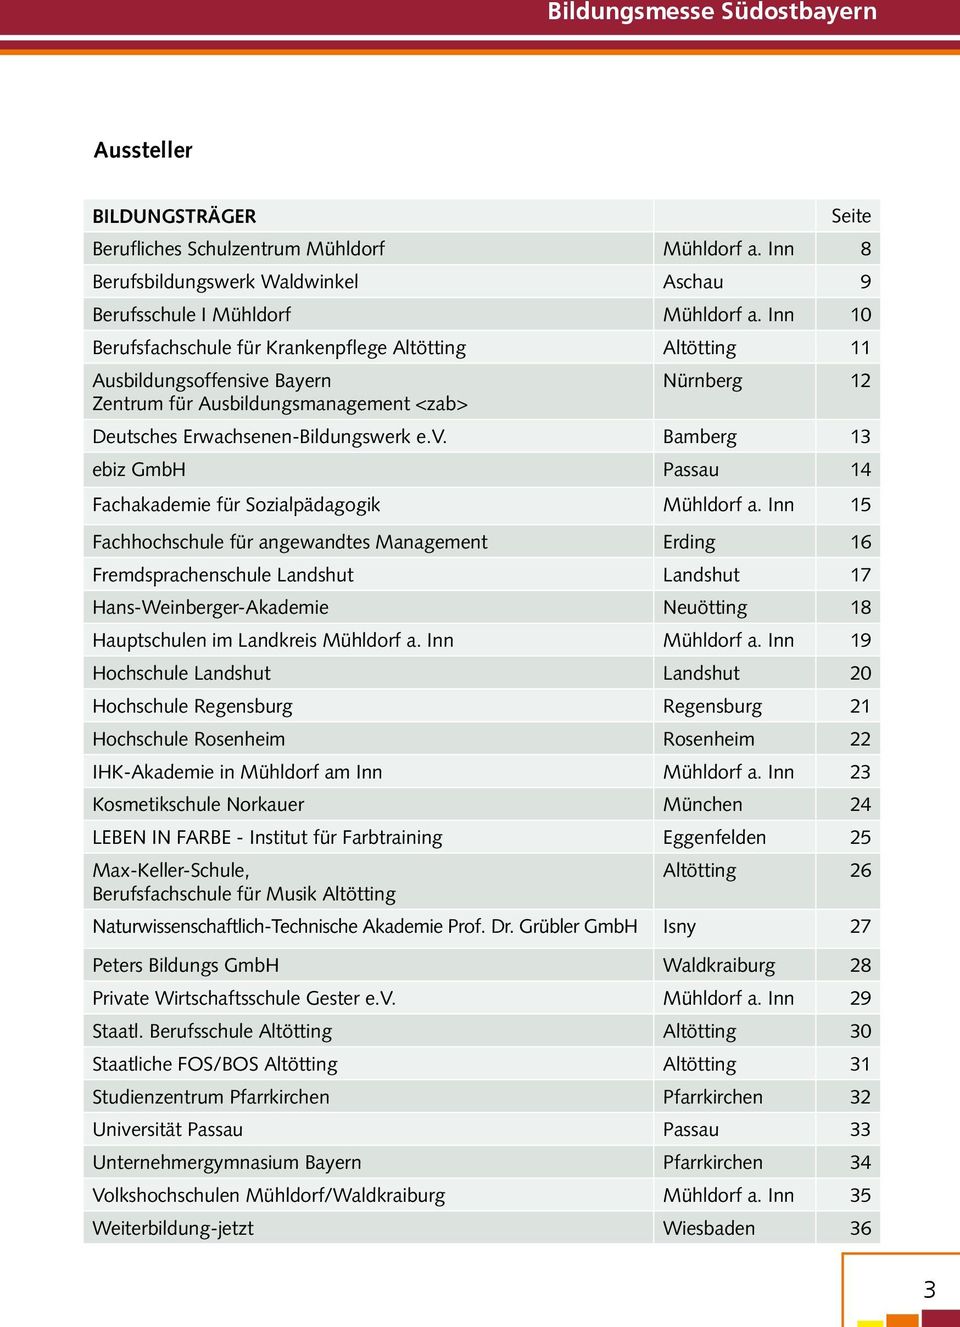 Inn 15 Fachhochschule für angewandtes Management Erding 16 Fremdsprachenschule Landshut Landshut 17 Hans-Weinberger-Akademie Neuötting 18 Hauptschulen im Landkreis Mühldorf a. Inn Mühldorf a.